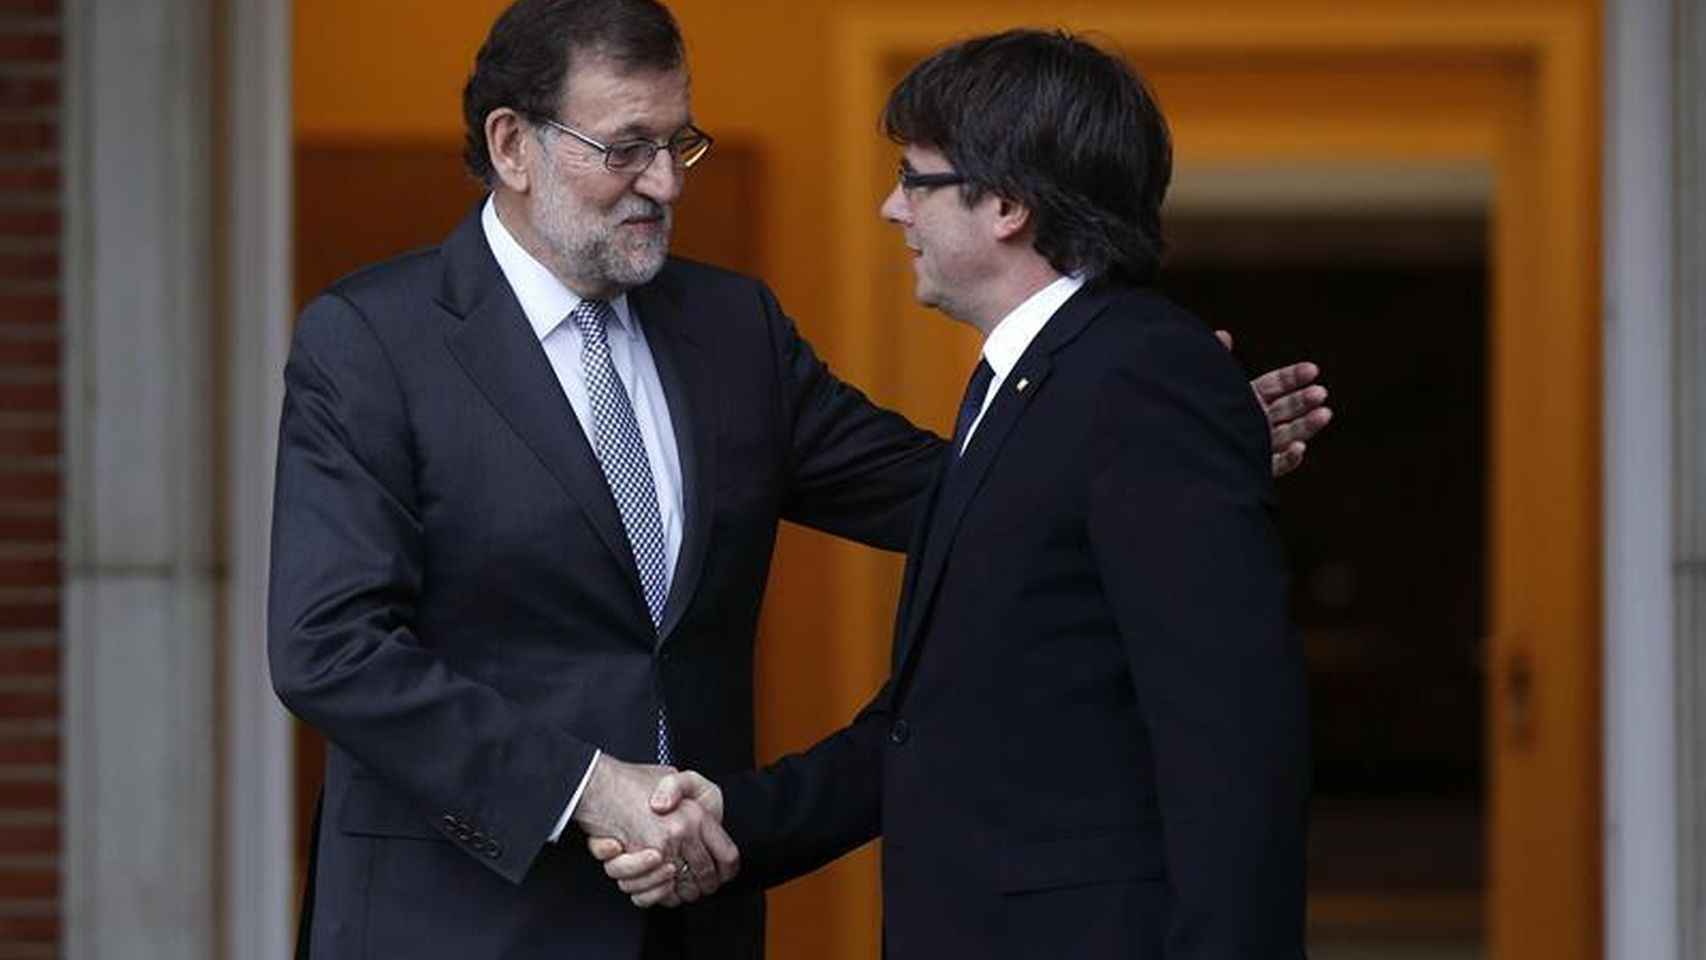 Mariano Rajoy y Carles Puigdemont durante su entrevista en la Moncloa en abril de 2016 / EFE